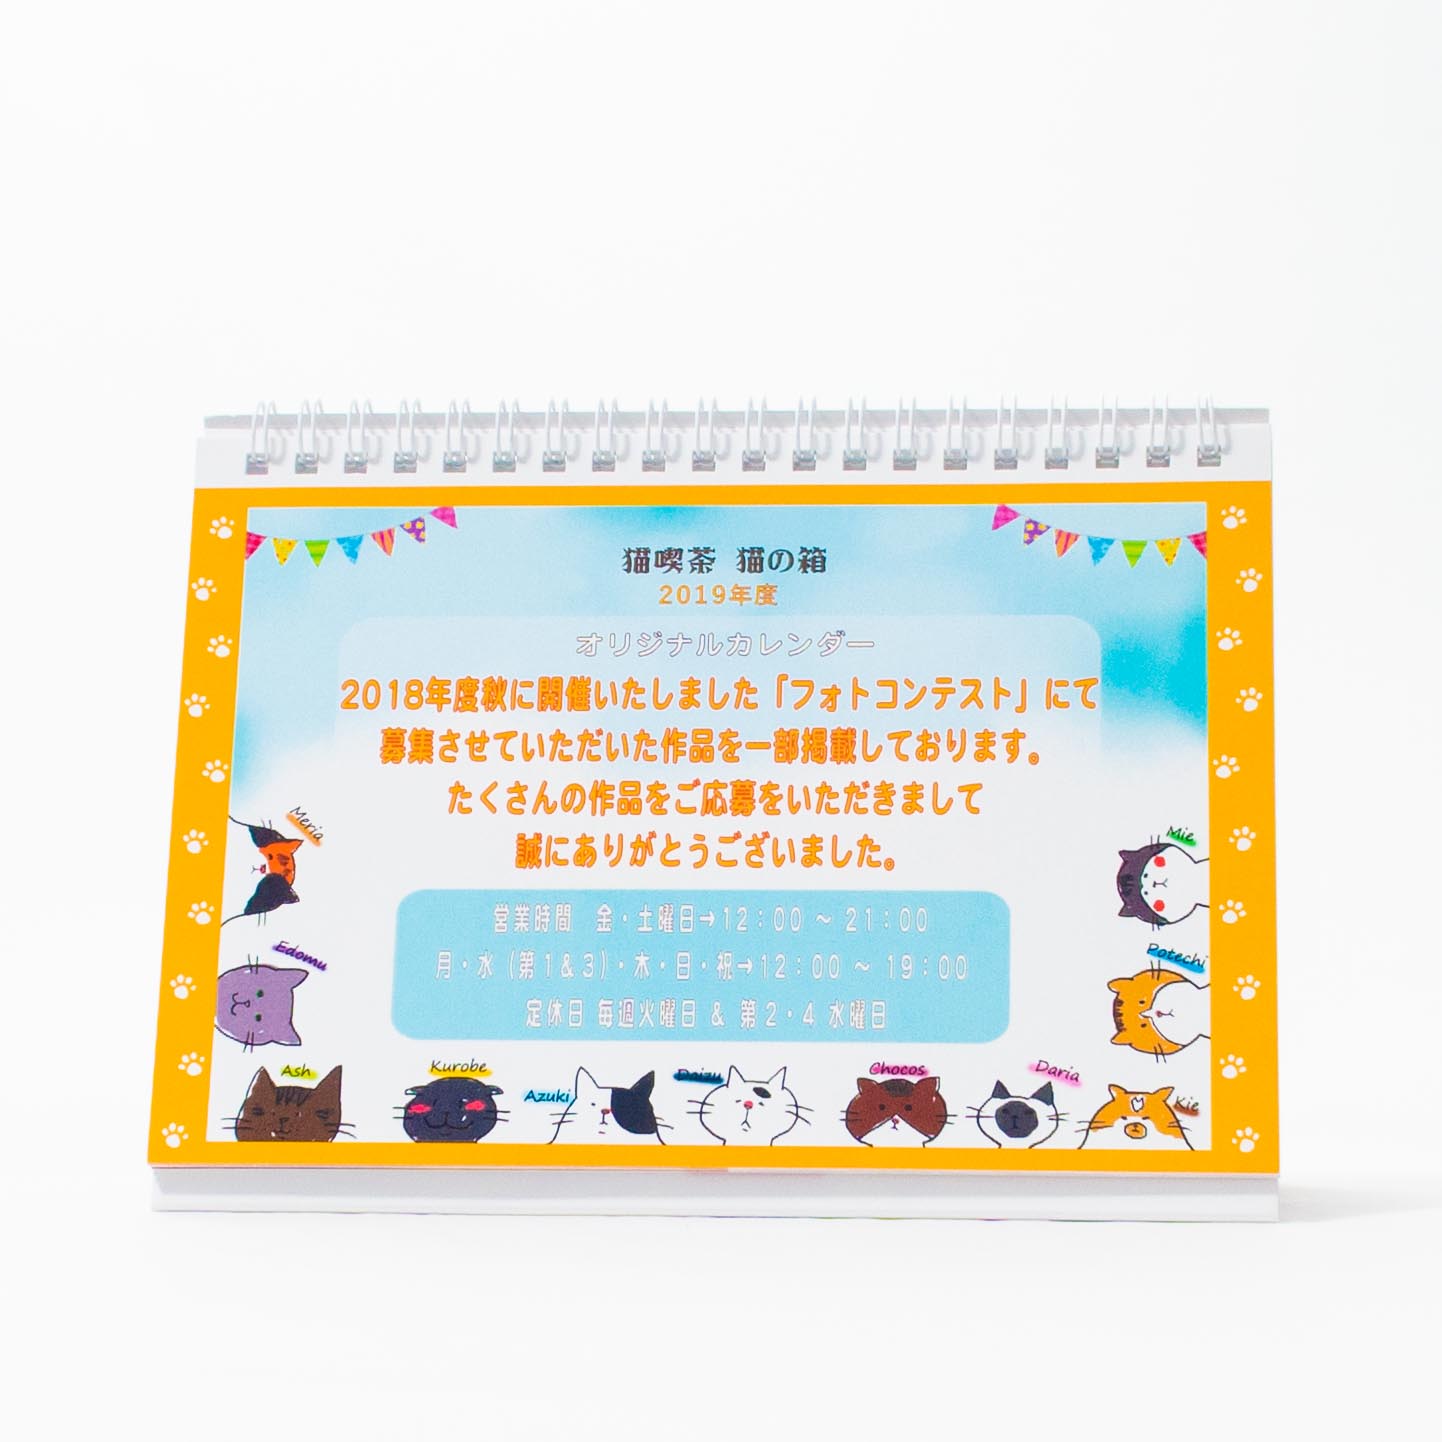 「猫喫茶「猫の箱」	 様」製作のオリジナルカレンダー